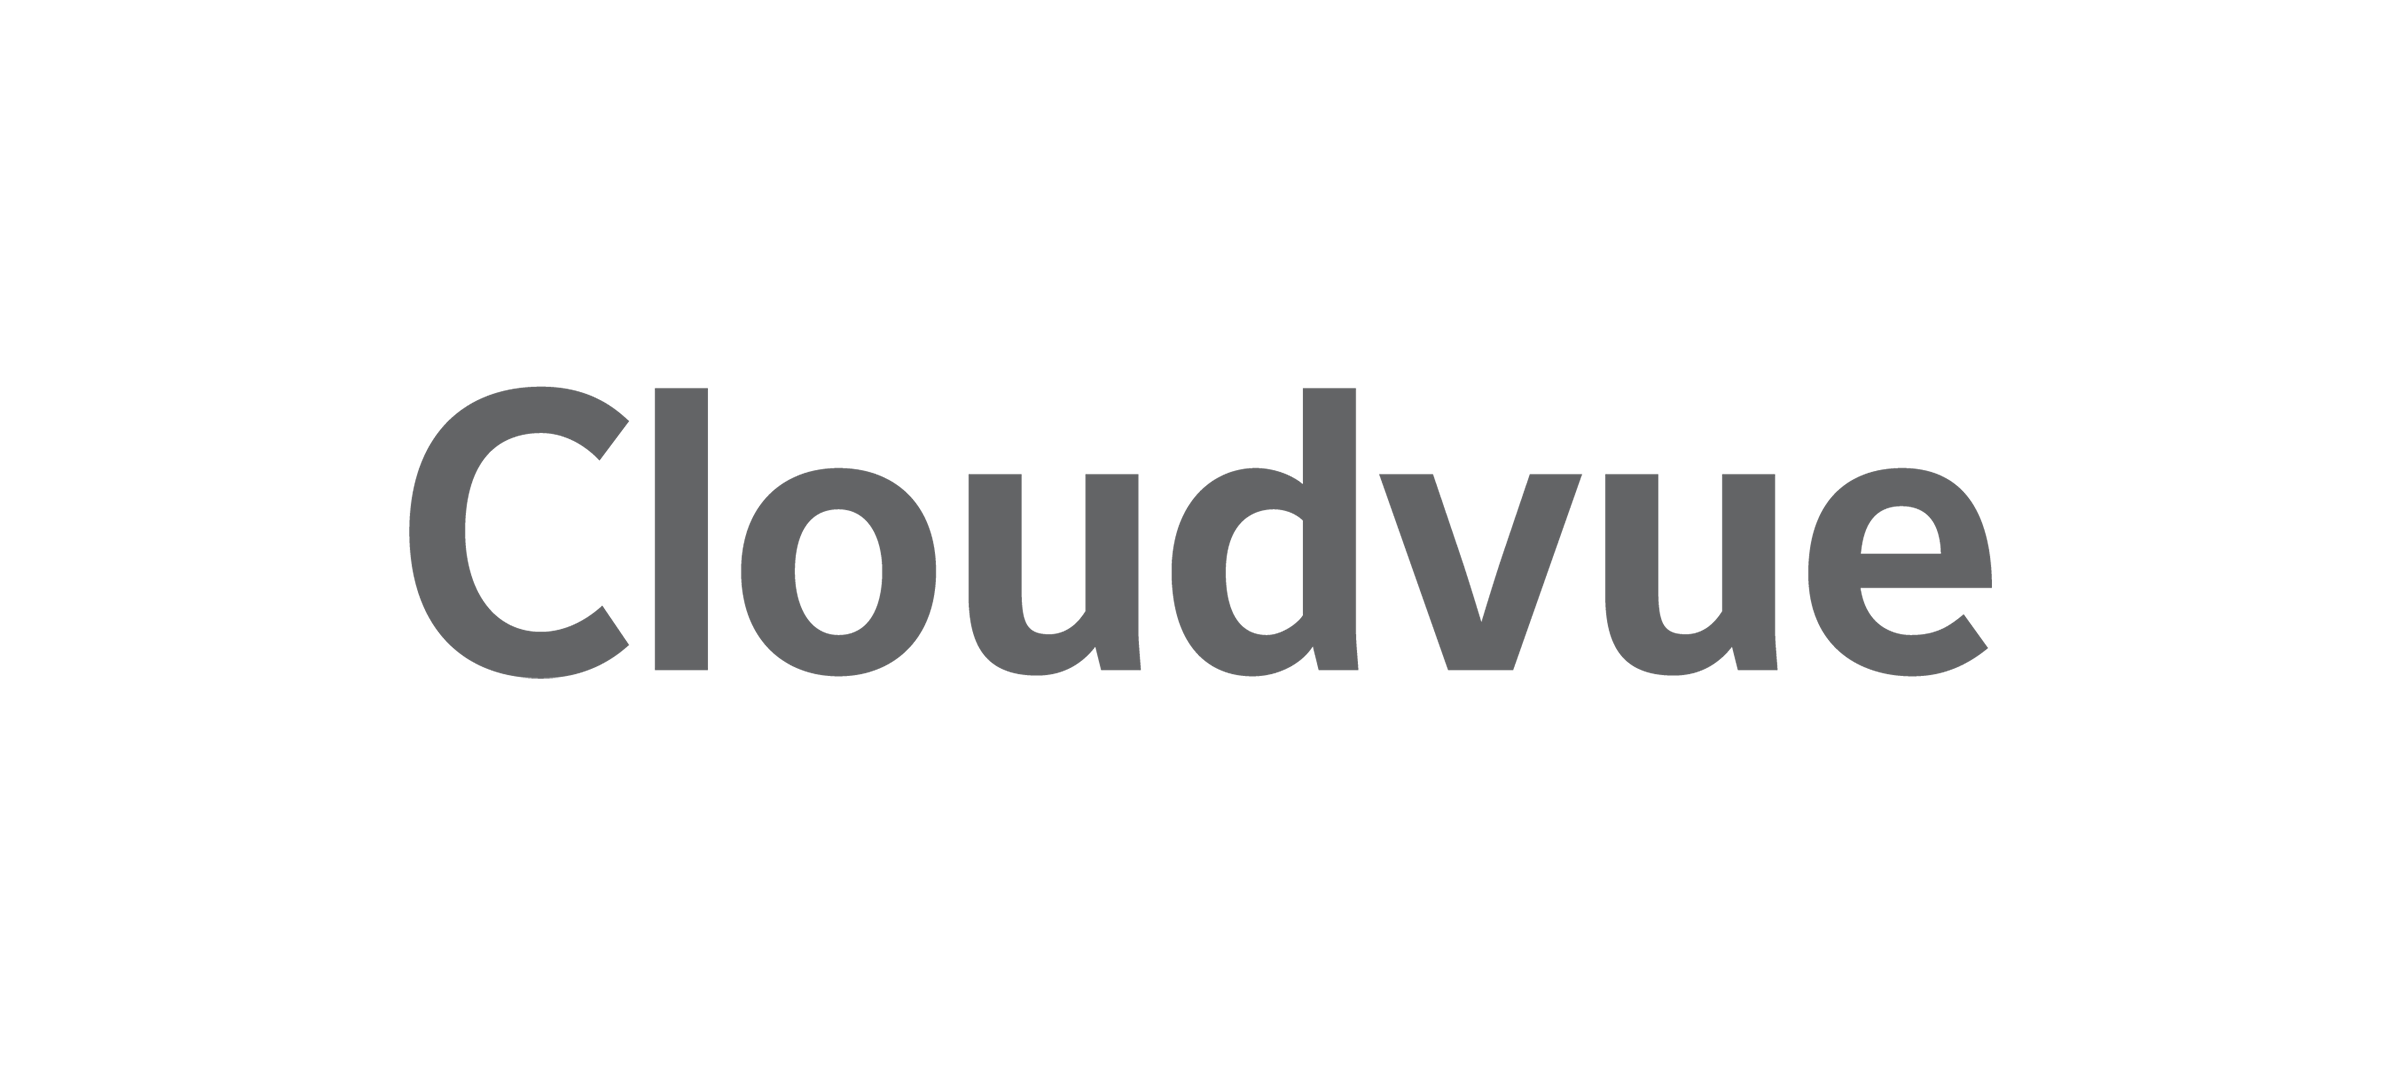 Cloudvue logo